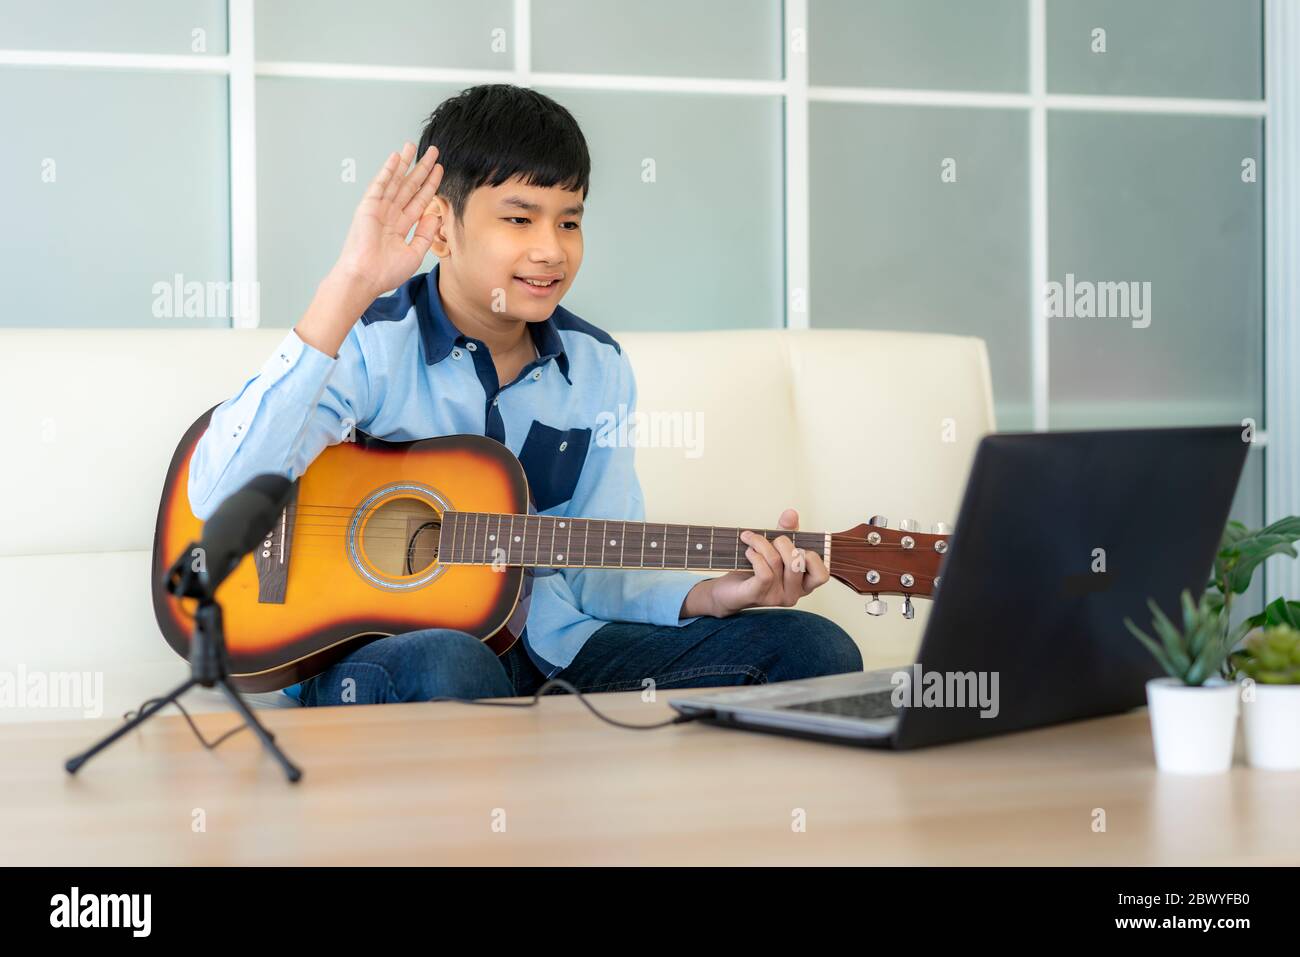 Asiatische junge spielen akustische Gitarre virtuelle Happy Hour Treffen für Musik online spielen zusammen mit Freund in Videokonferenz mit Laptop für ein Online-m Stockfoto